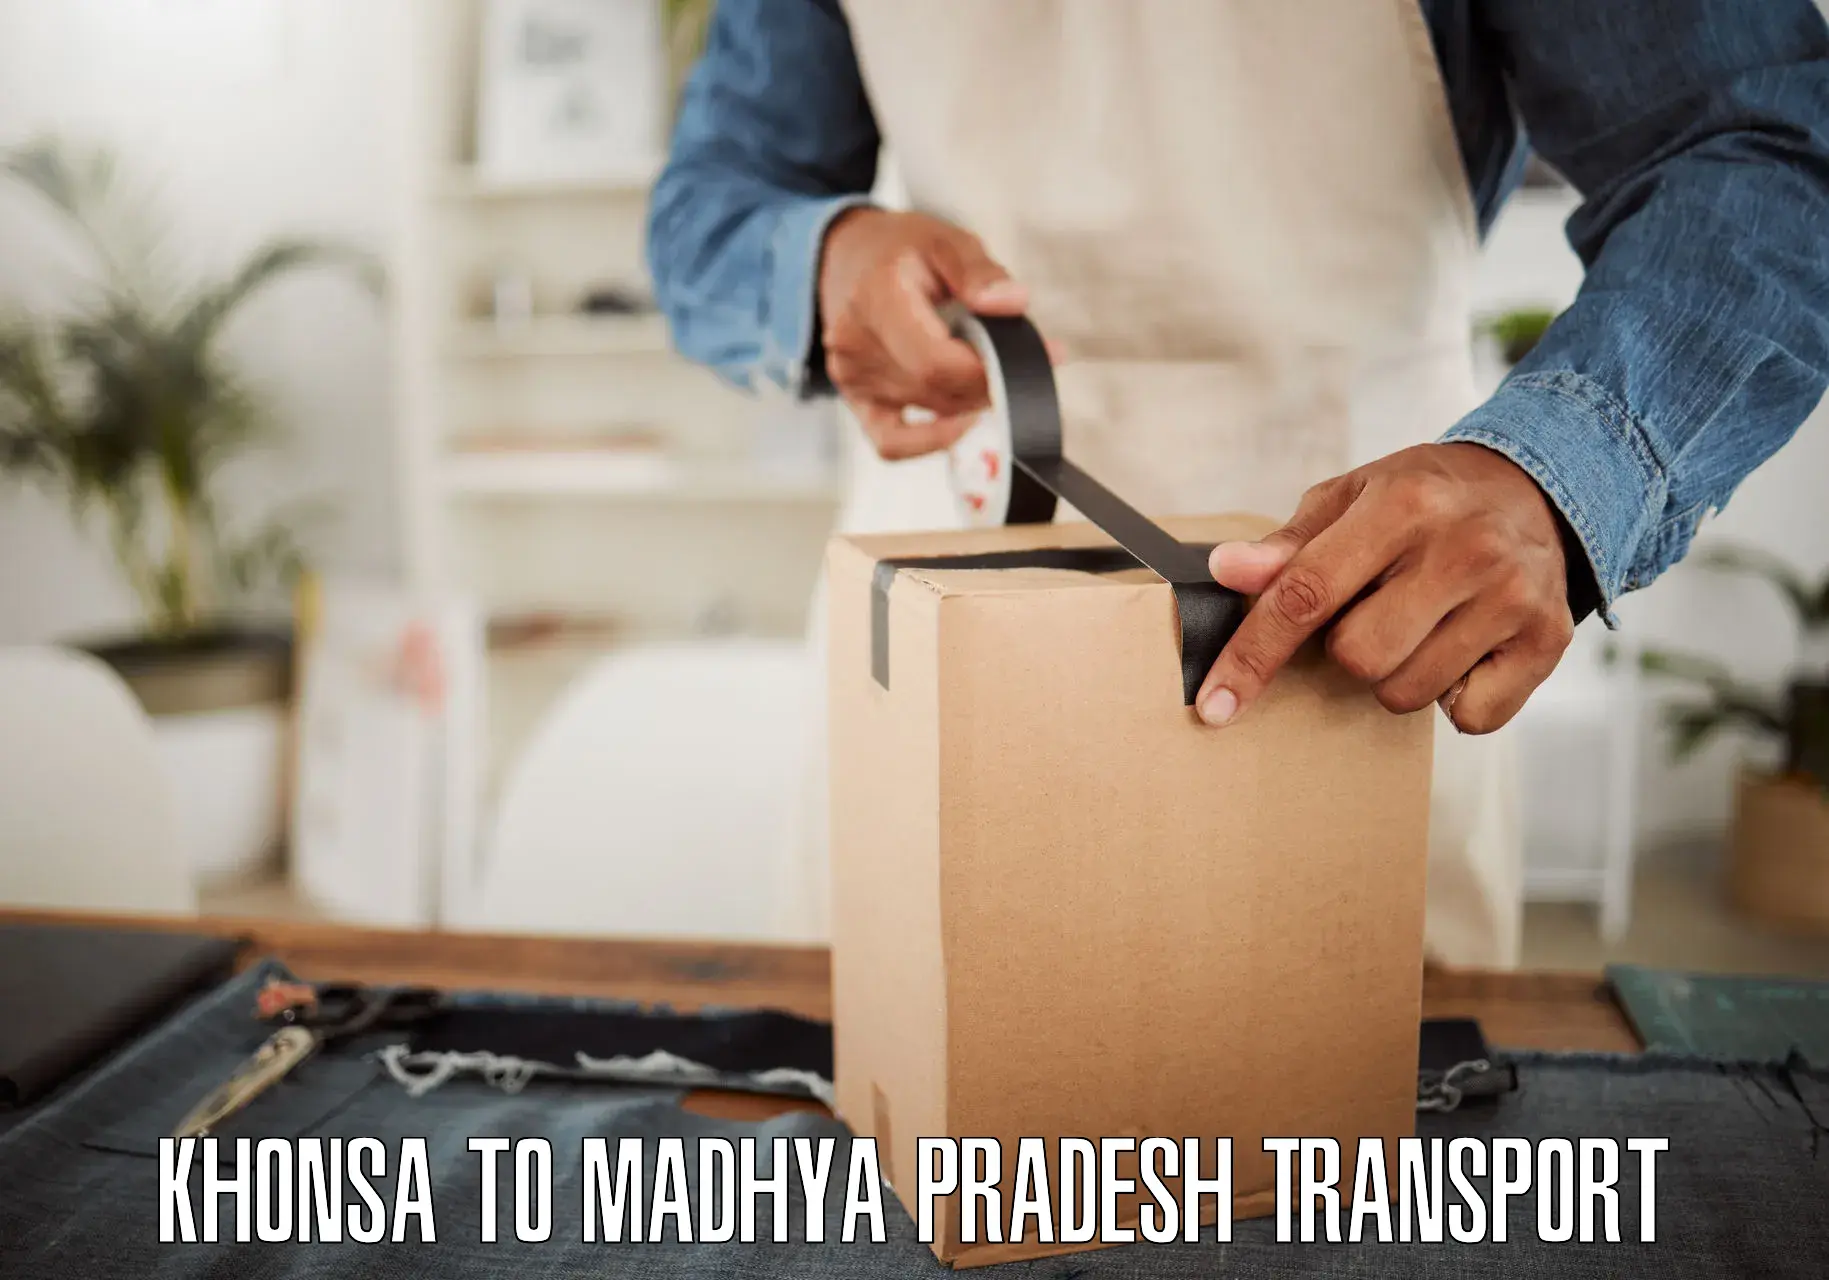 Bike transport service Khonsa to Madhya Pradesh